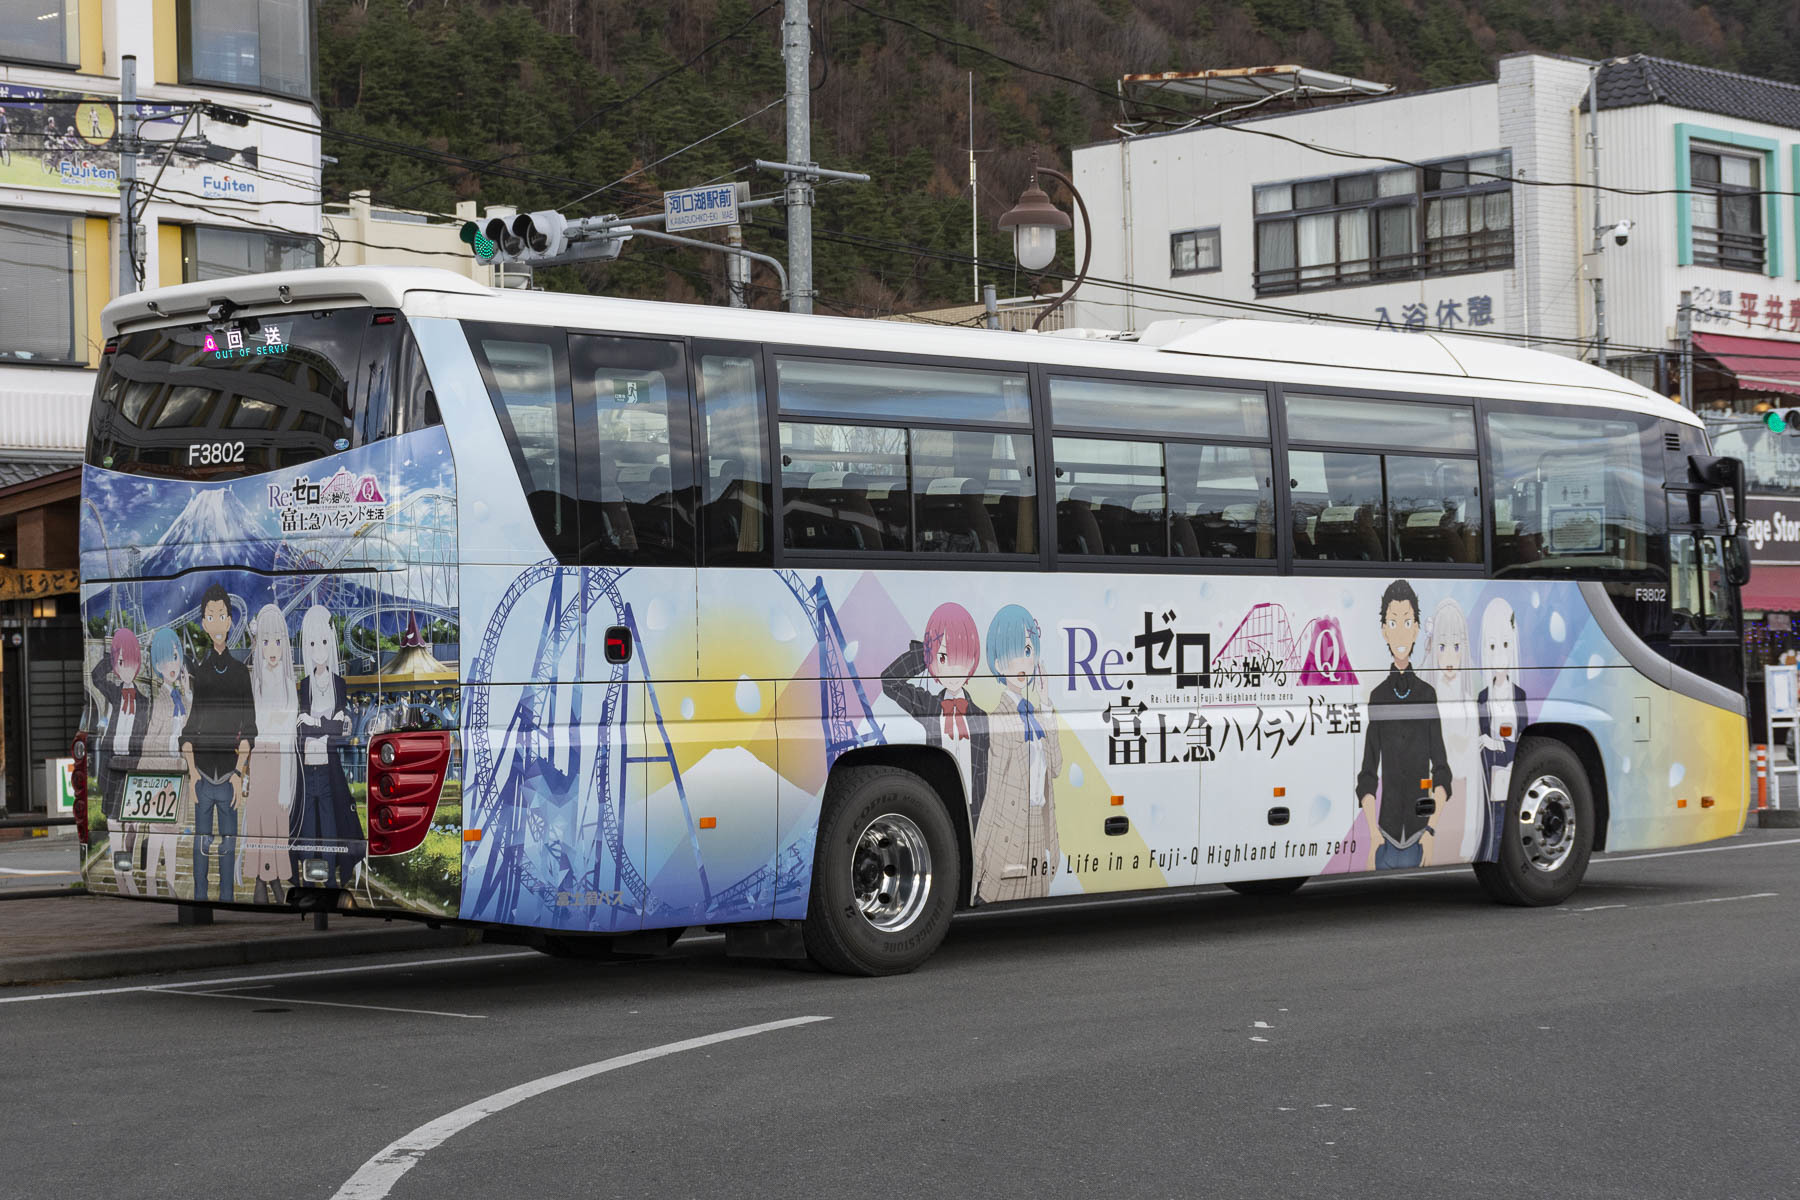 富士急バス / Re:ゼロから始める富士急ハイランド生活ラッピングバス_d0226909_16424850.jpg